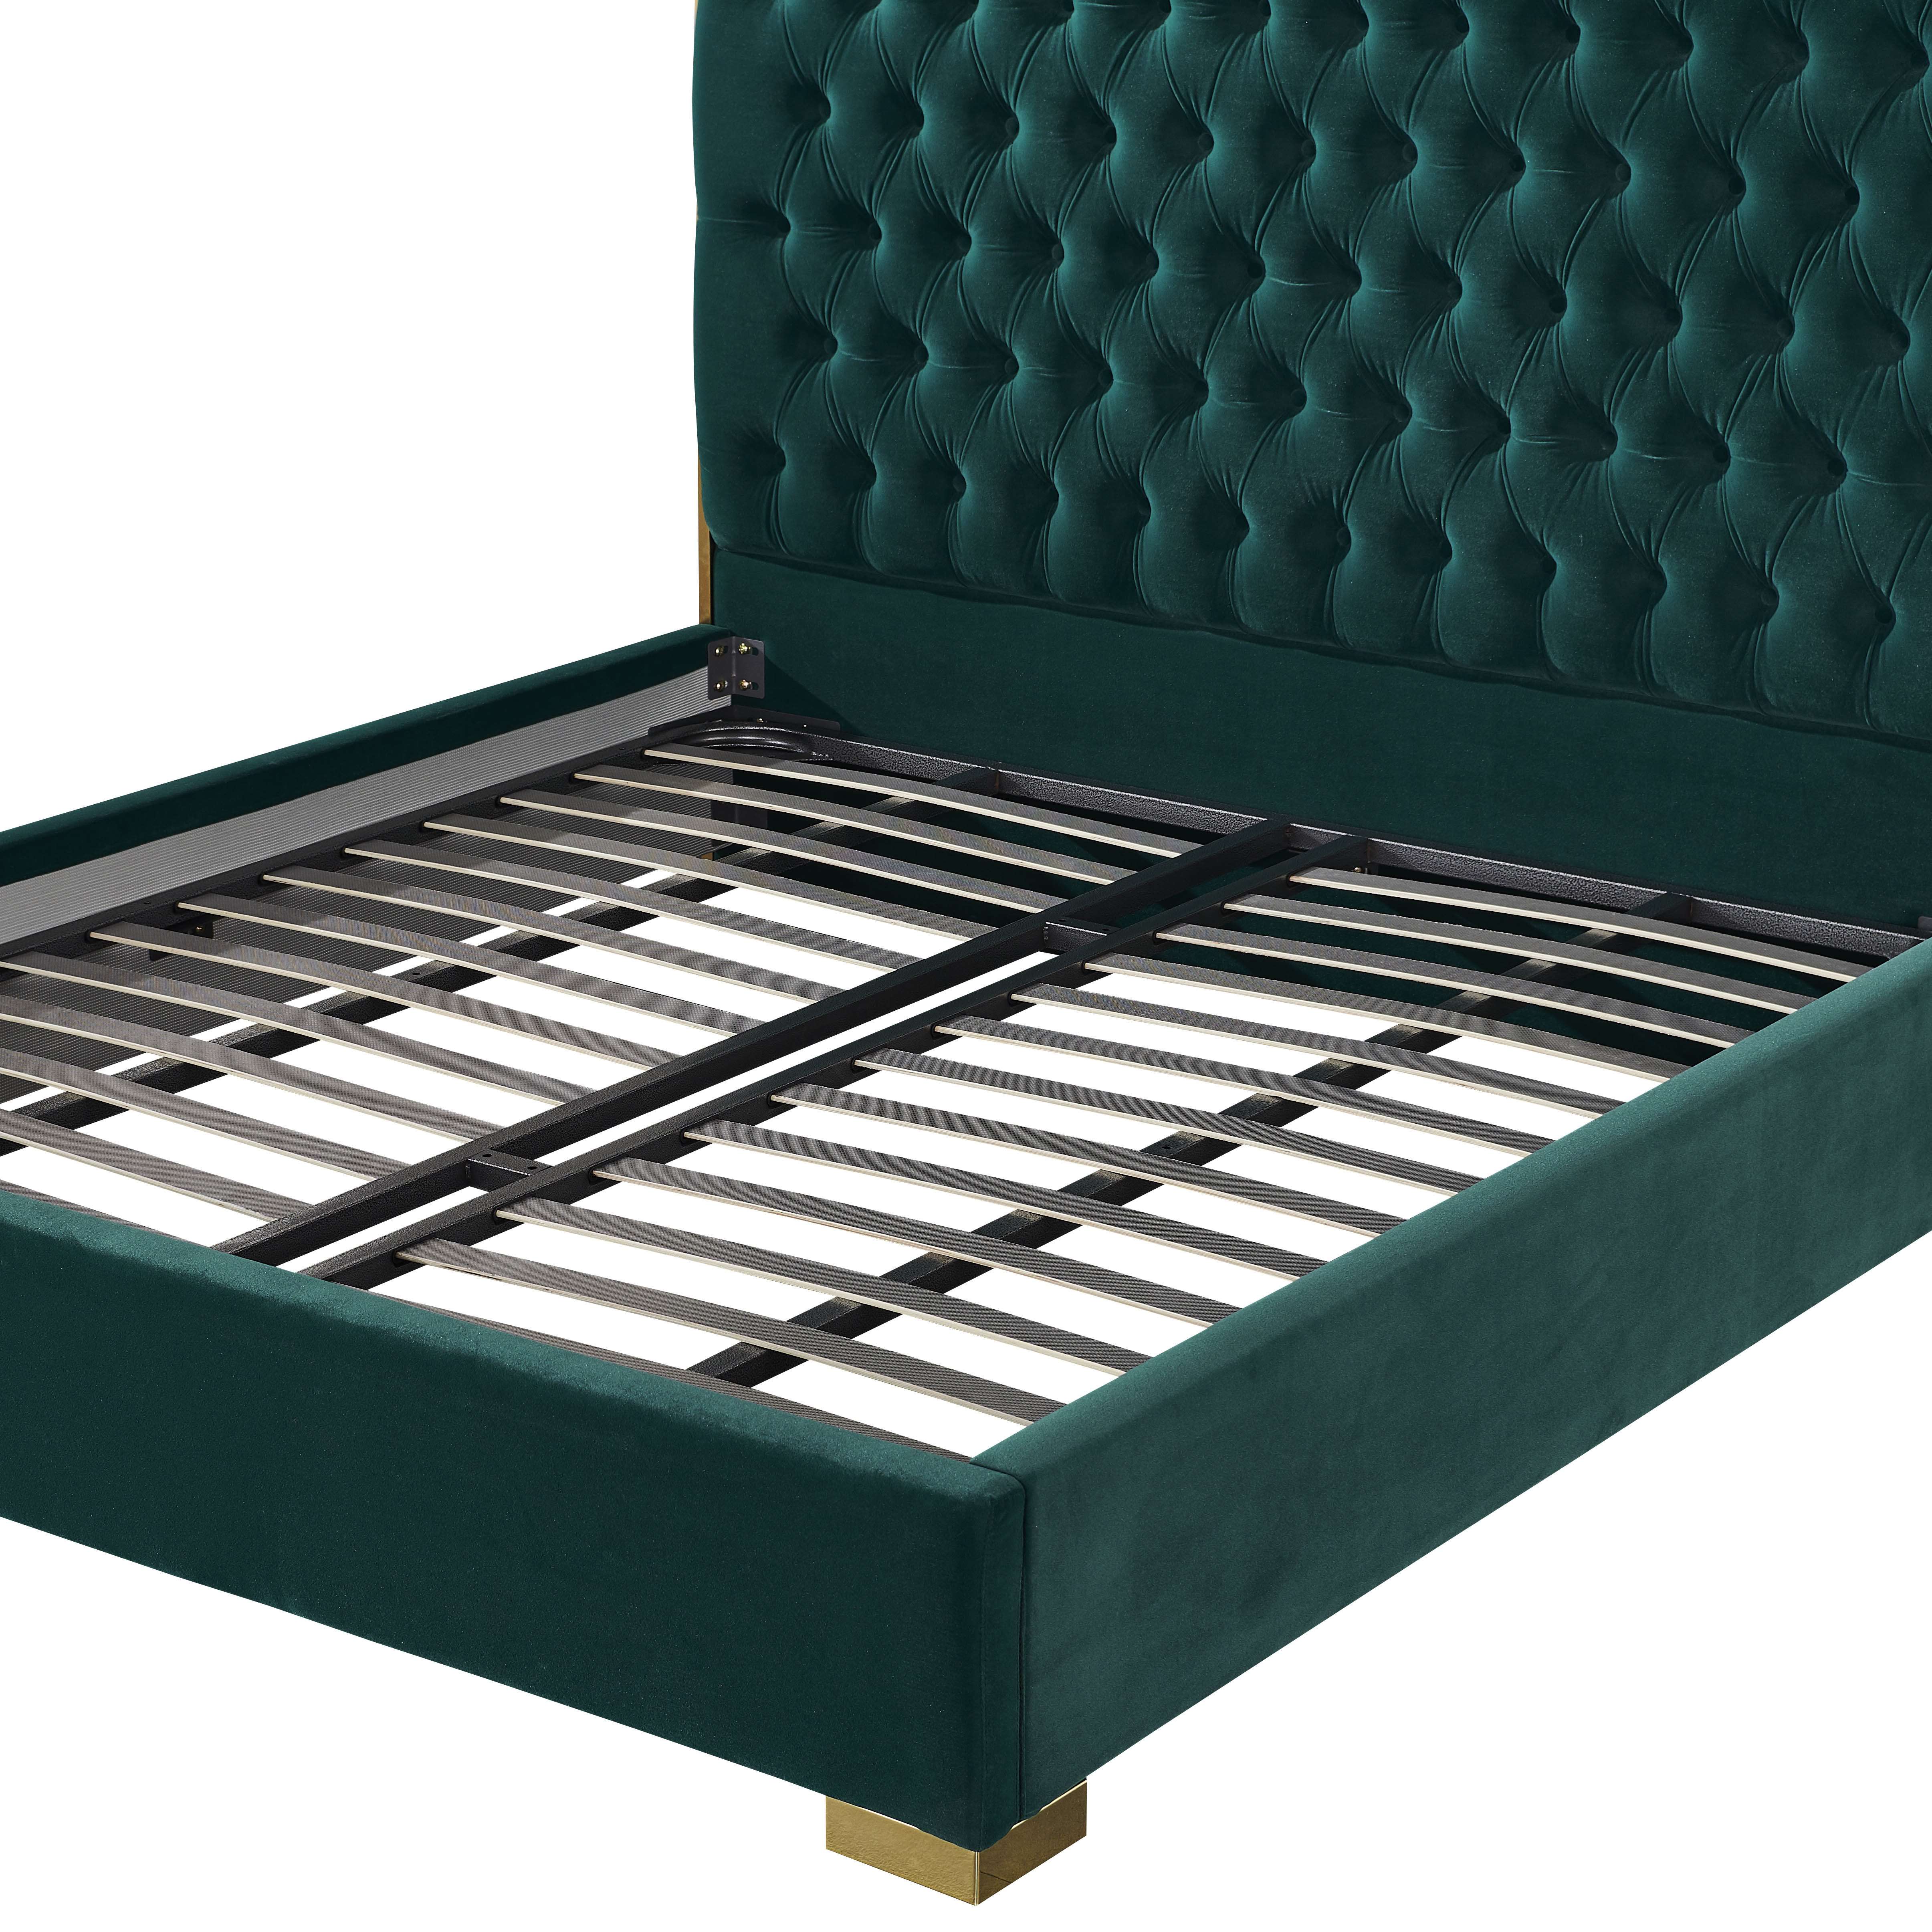 Wholesale Modern Tufted Upholstered Bed Manufacturer | LZ-R948